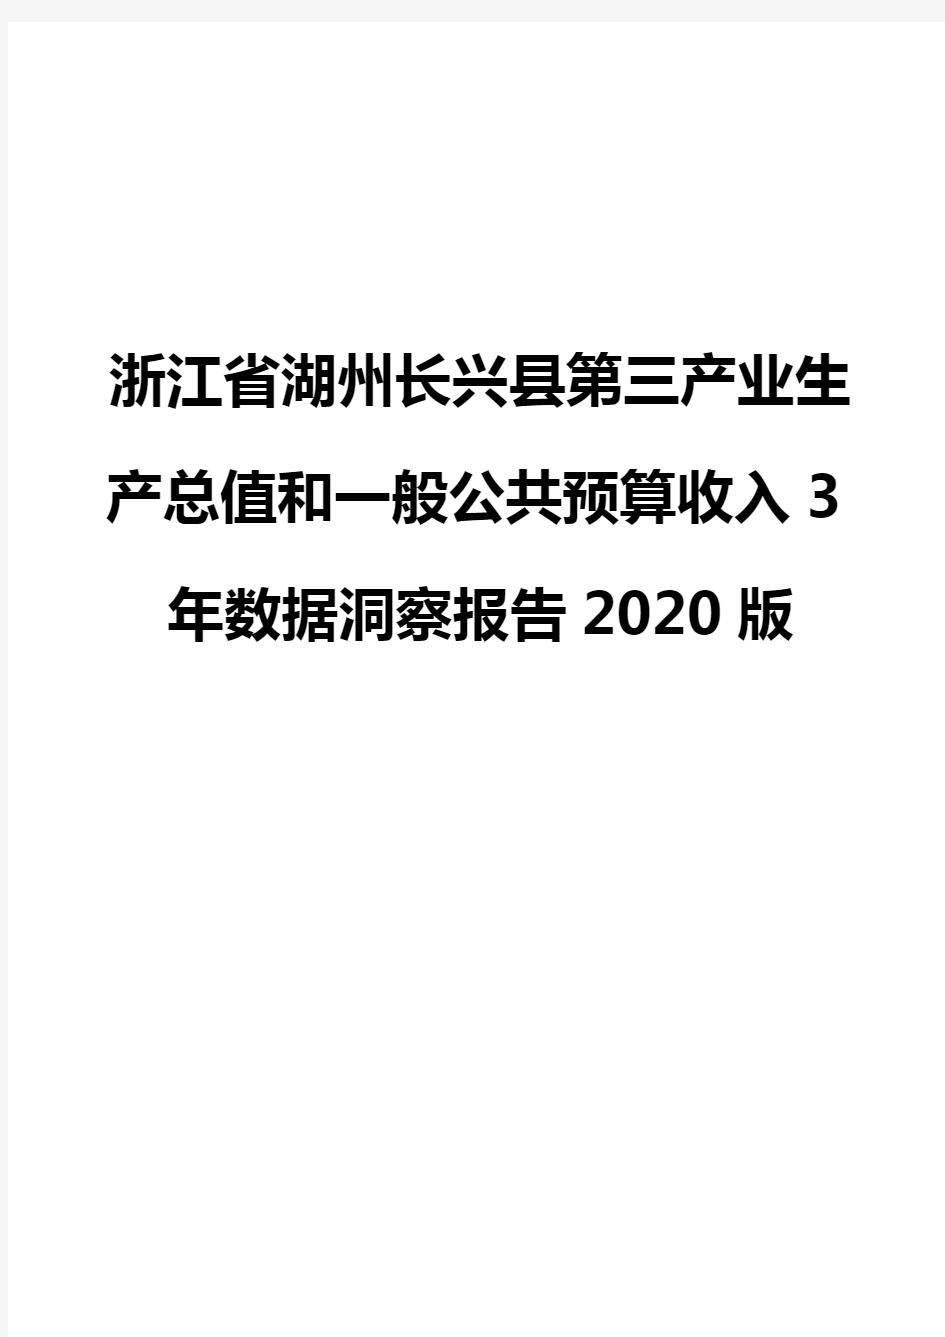 浙江省湖州长兴县第三产业生产总值和一般公共预算收入3年数据洞察报告2020版